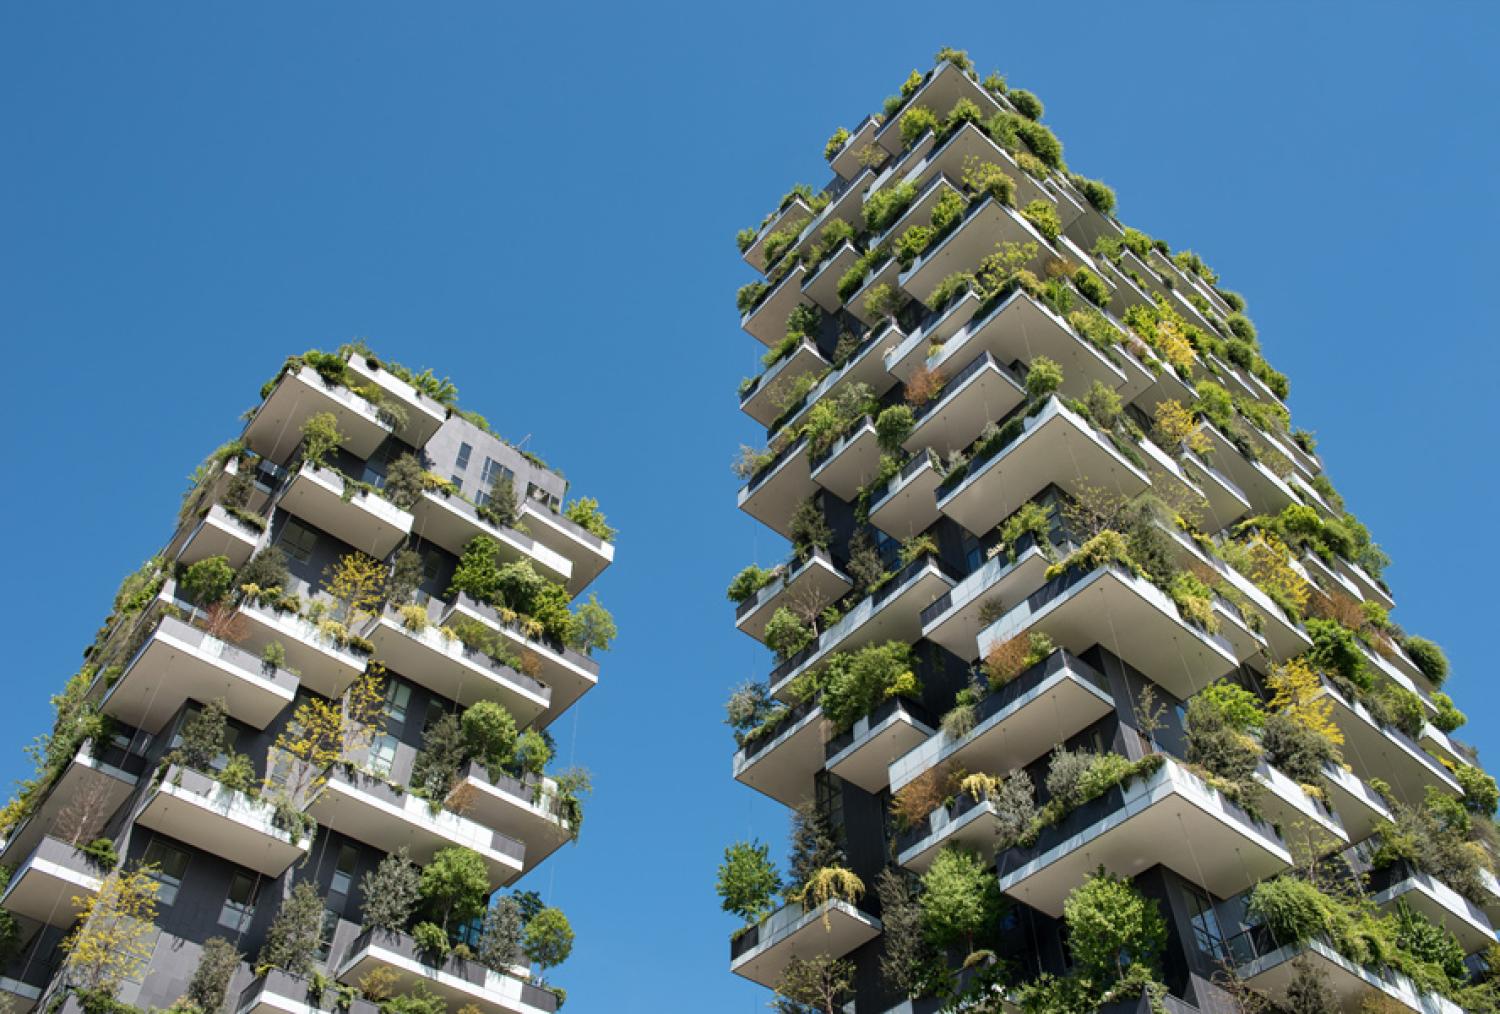 future green architecture